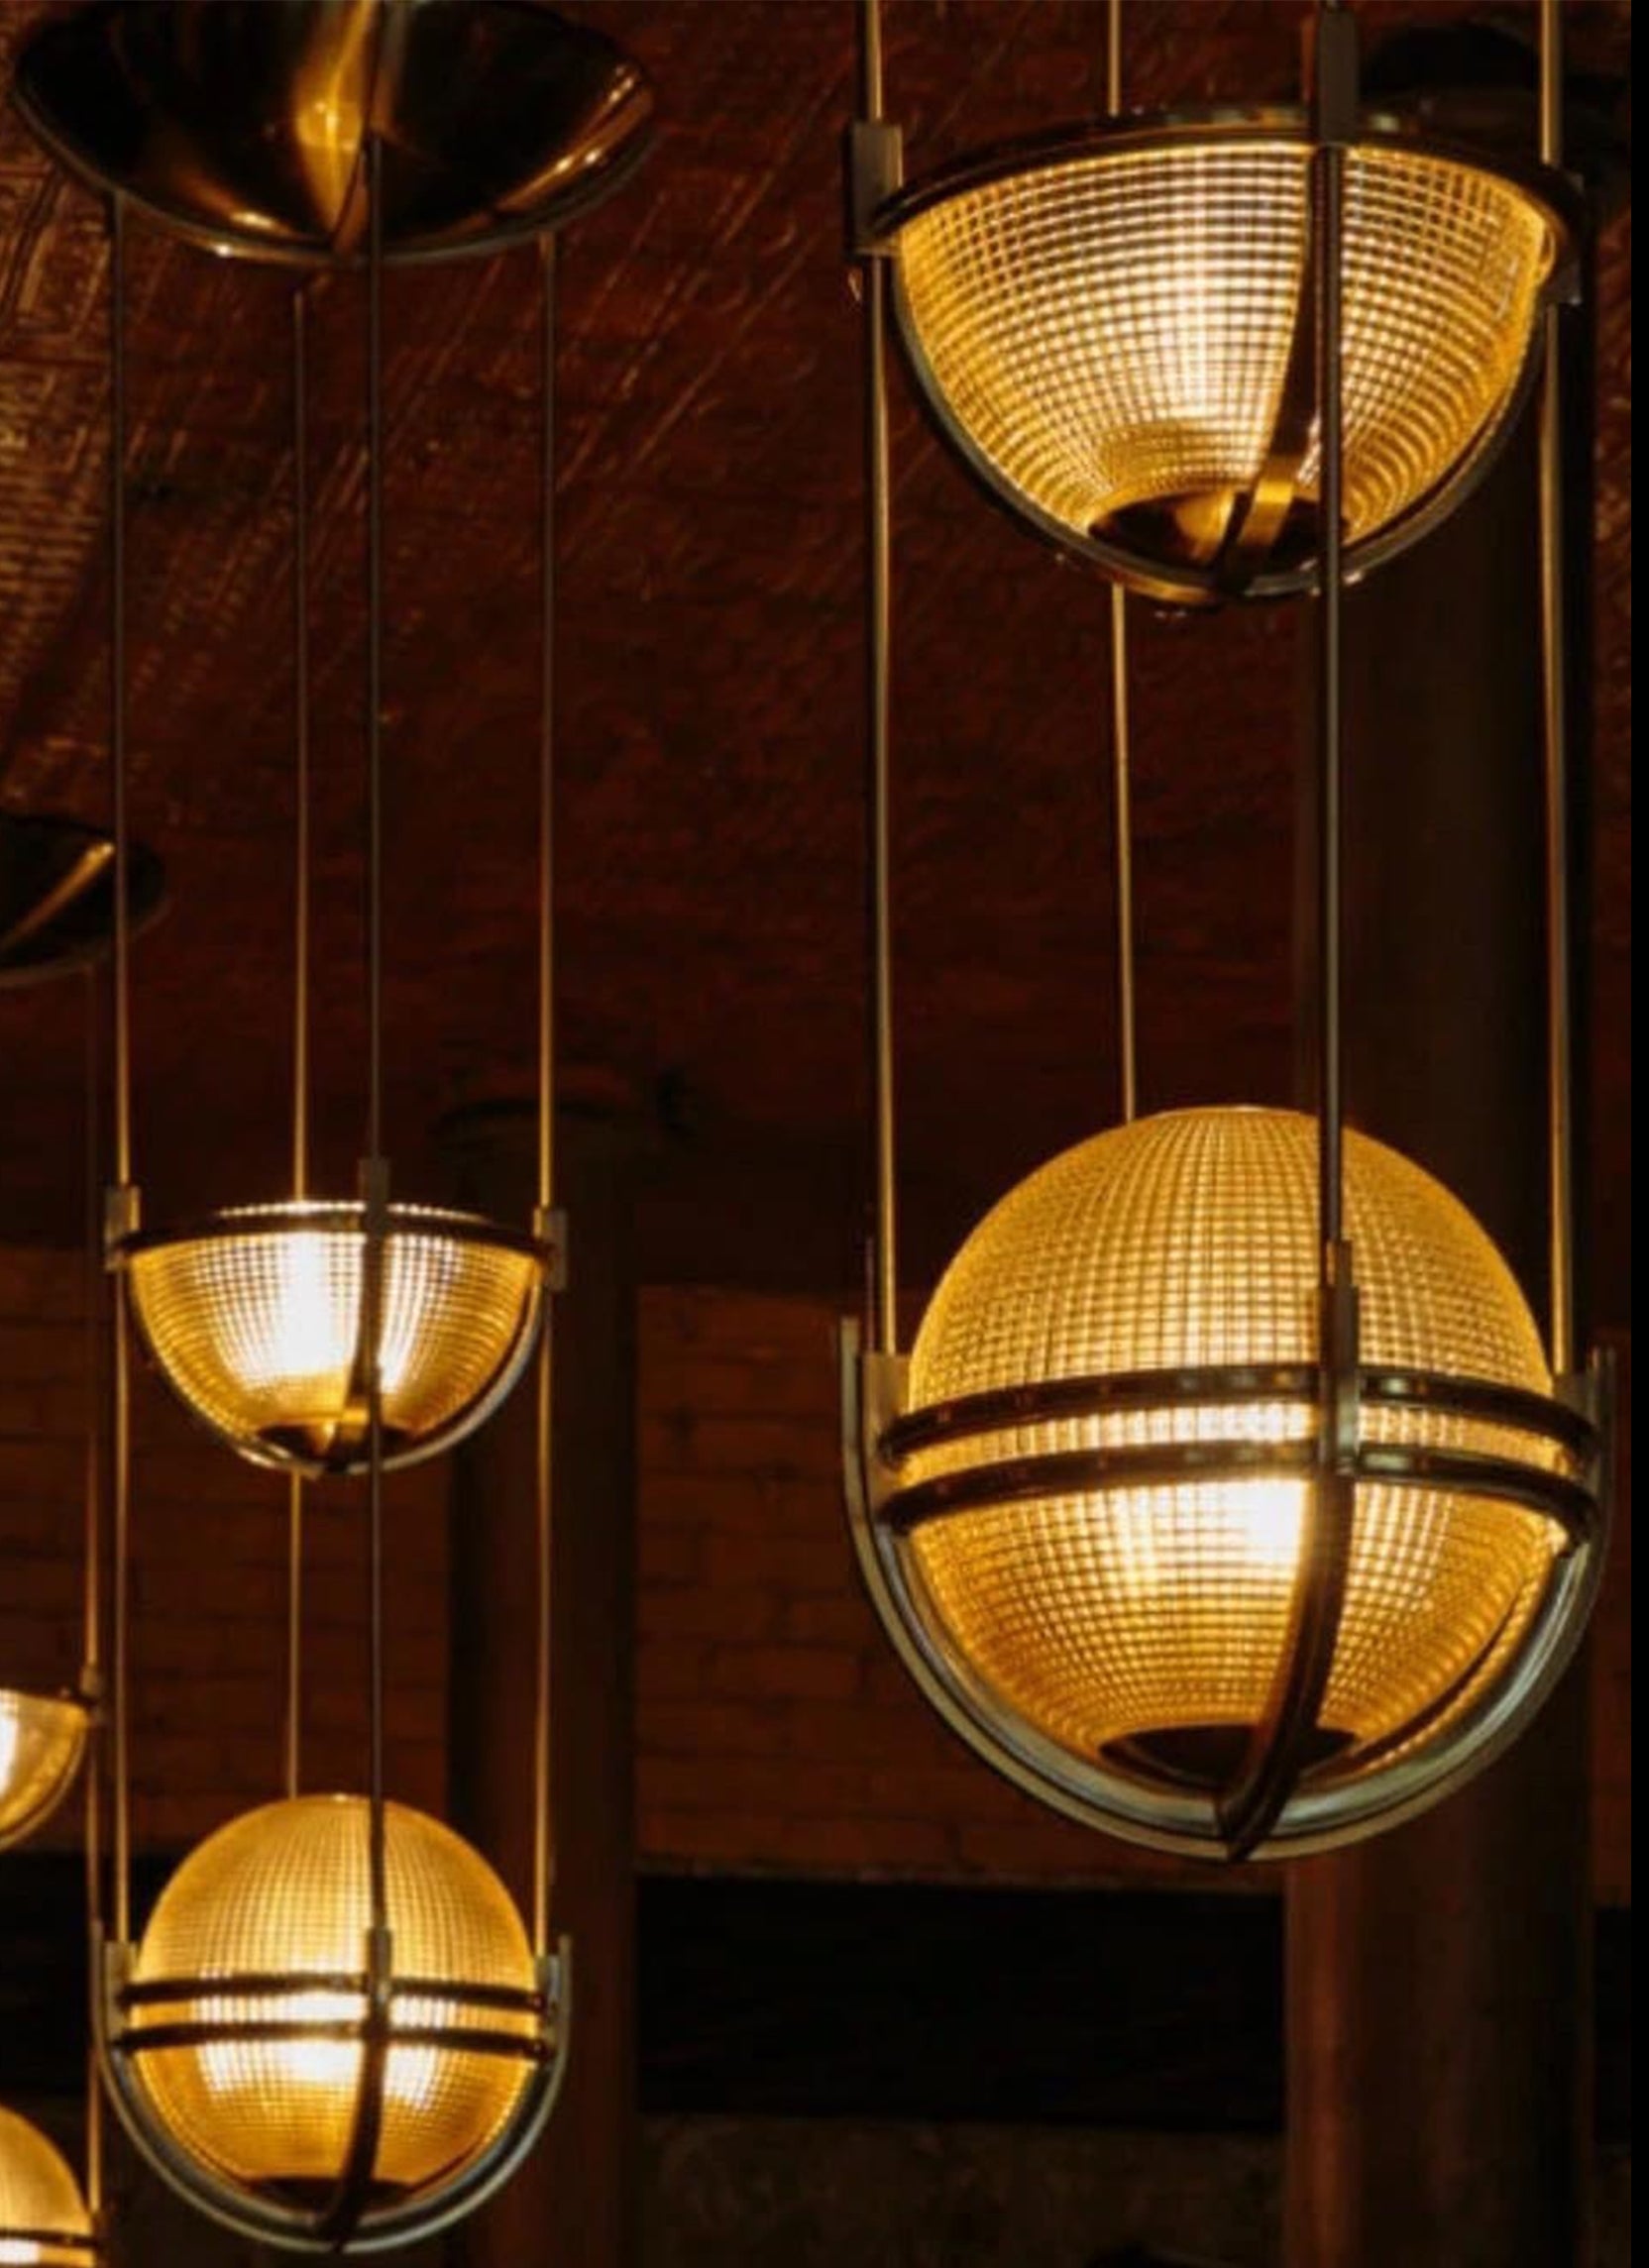 Ein Paar Art Deco Holophane Globular Glass Pendel Deckenleuchten Weißes Metall mit Messing Finishing Touches für eine Londoner Bar gemacht

Eine moderne Beleuchtung, die an die schönen kugelförmigen Linien des Art déco erinnert.

